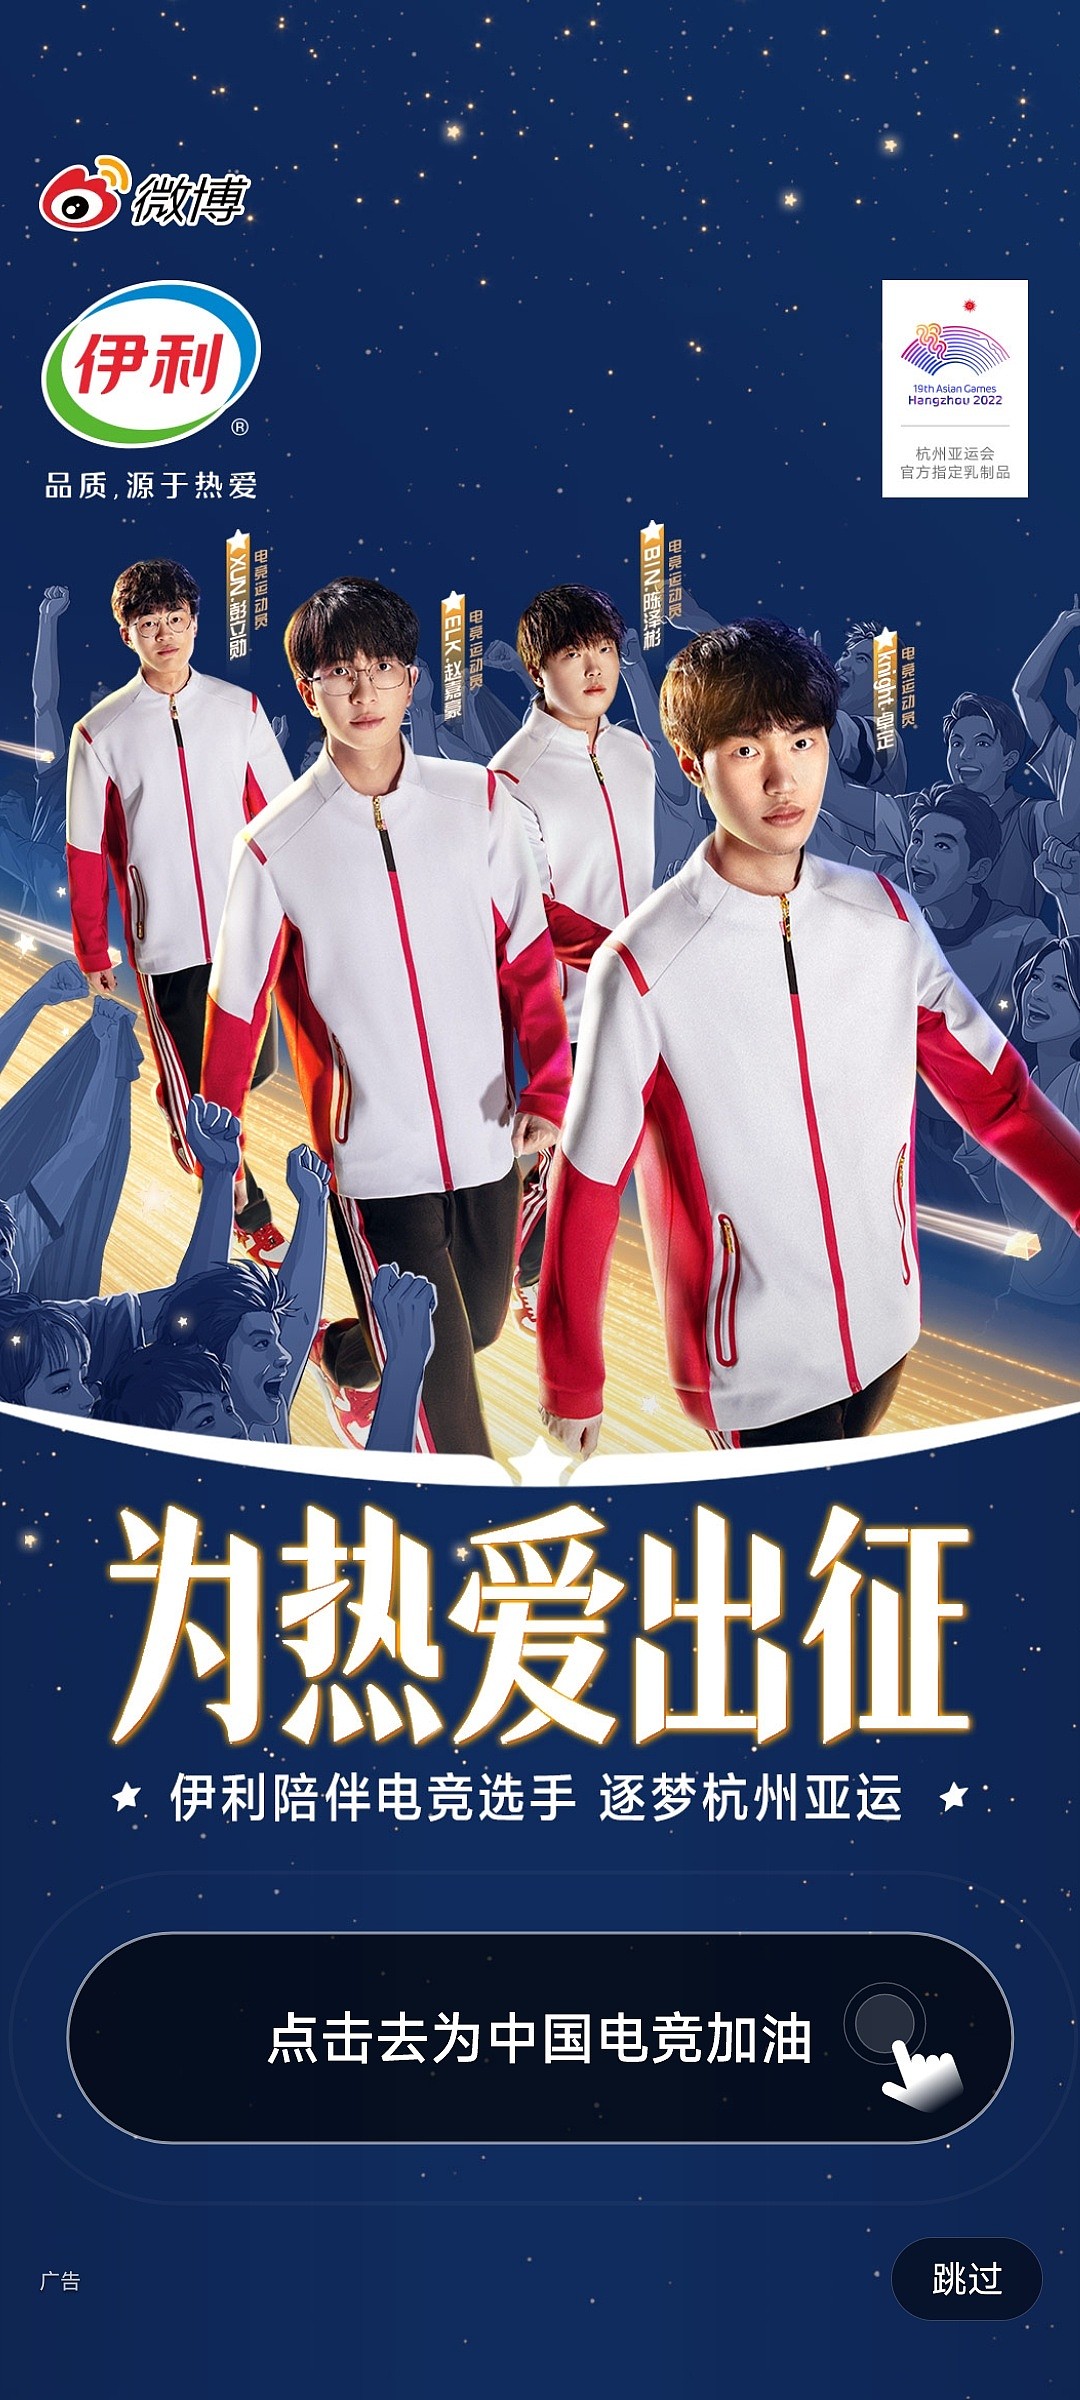 微博开屏广告为亚运英雄联盟中国代表队加油 - 1